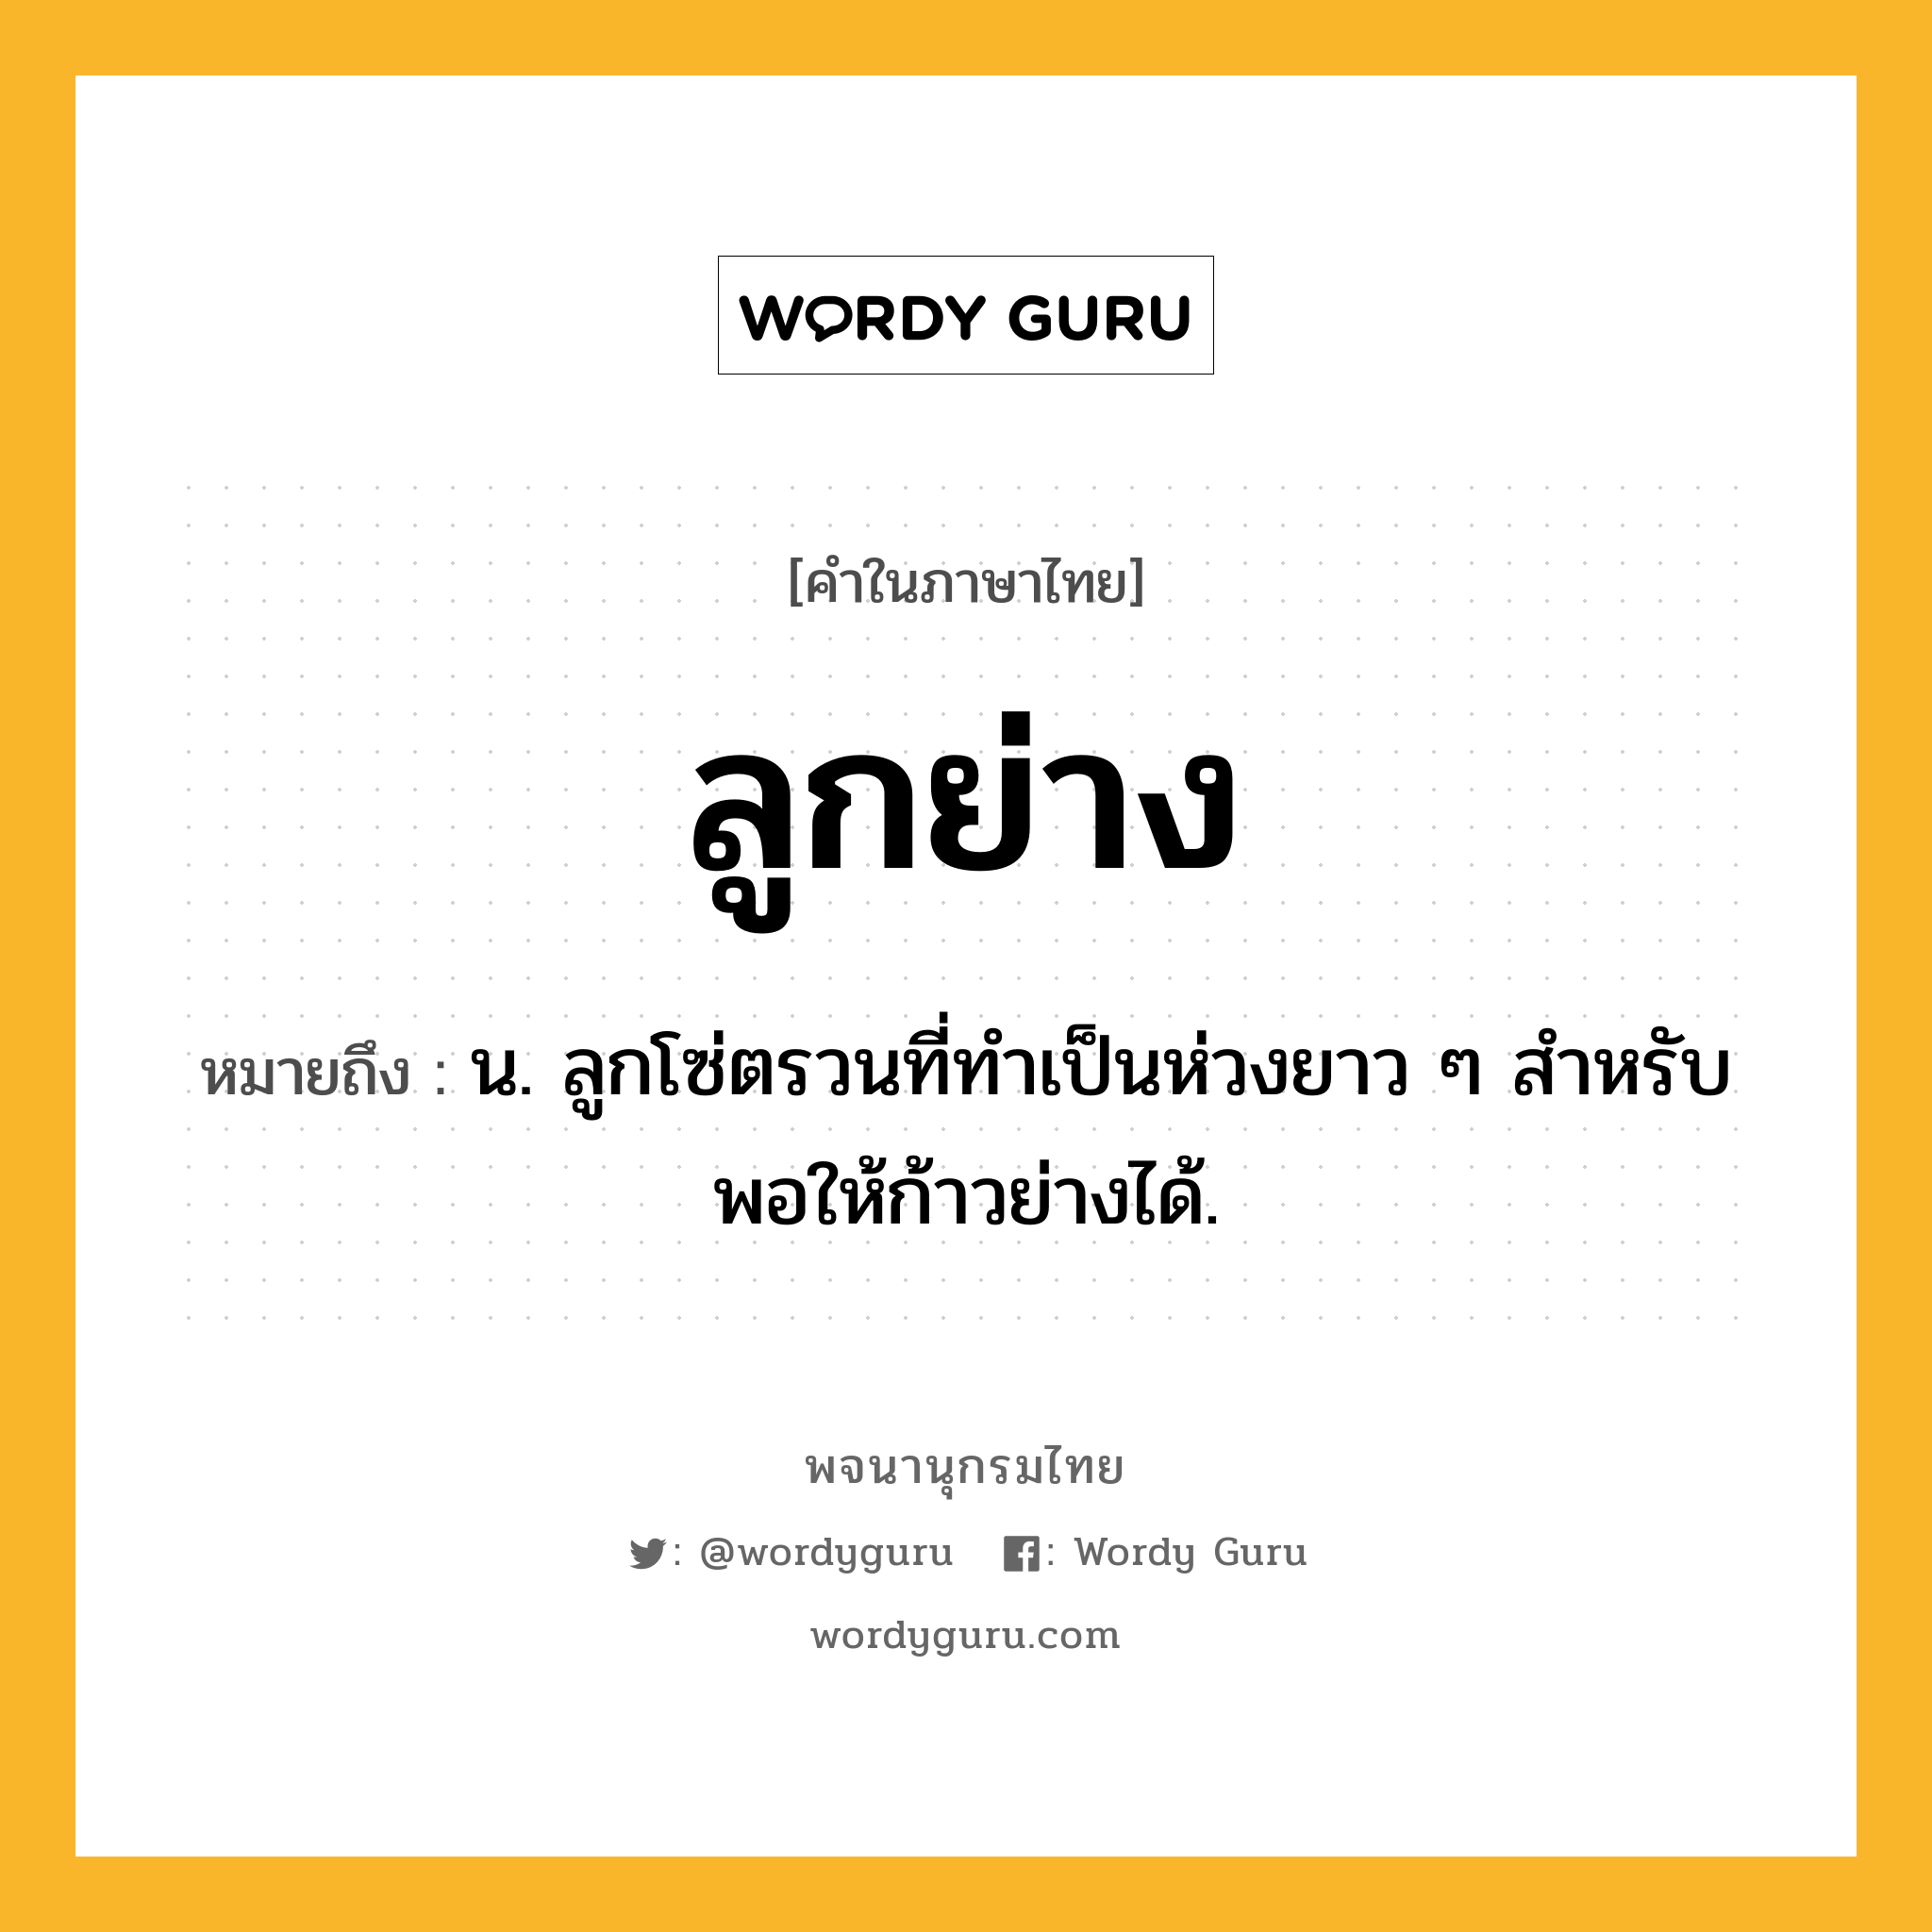 ลูกย่าง หมายถึงอะไร?, คำในภาษาไทย ลูกย่าง หมายถึง น. ลูกโซ่ตรวนที่ทําเป็นห่วงยาว ๆ สําหรับพอให้ก้าวย่างได้.